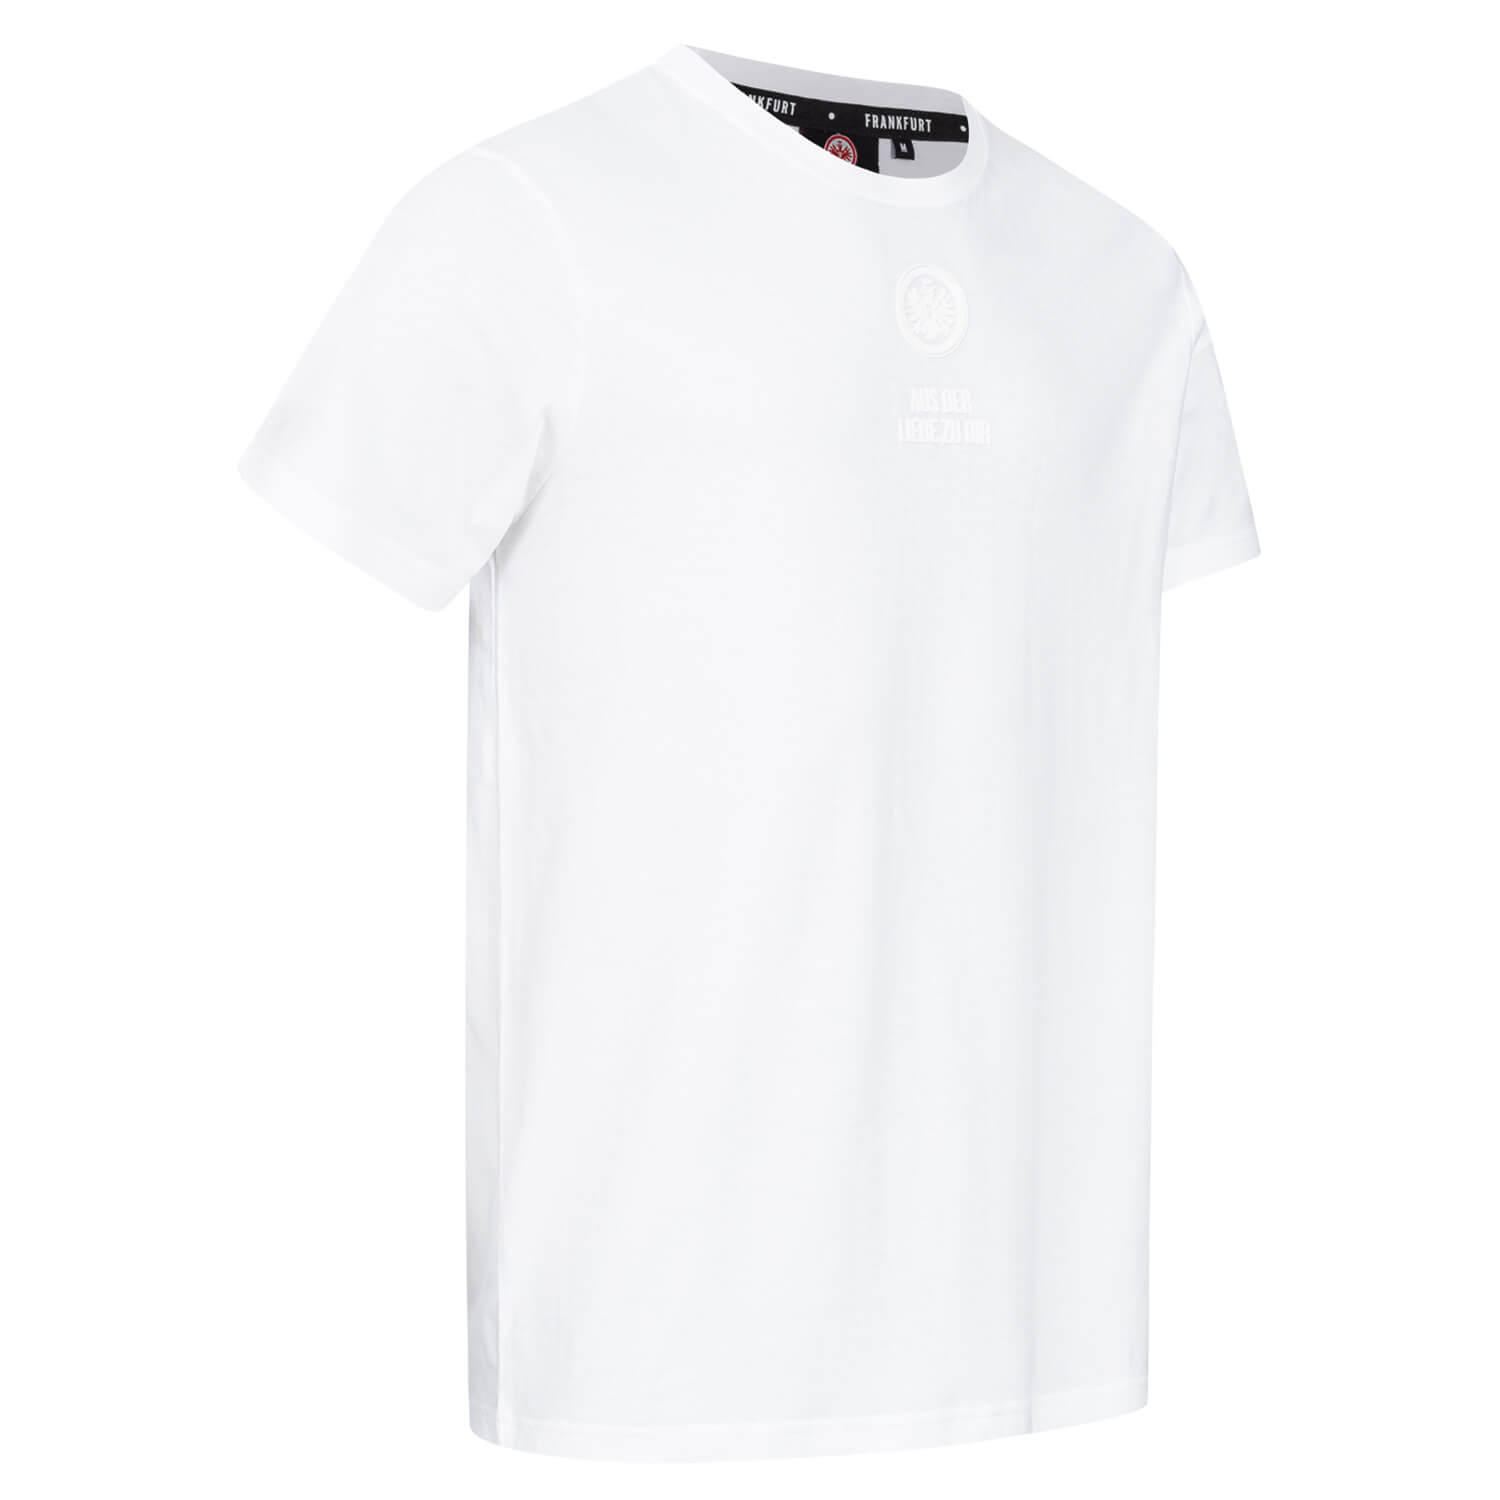 Bild 4: T-Shirt White Badge